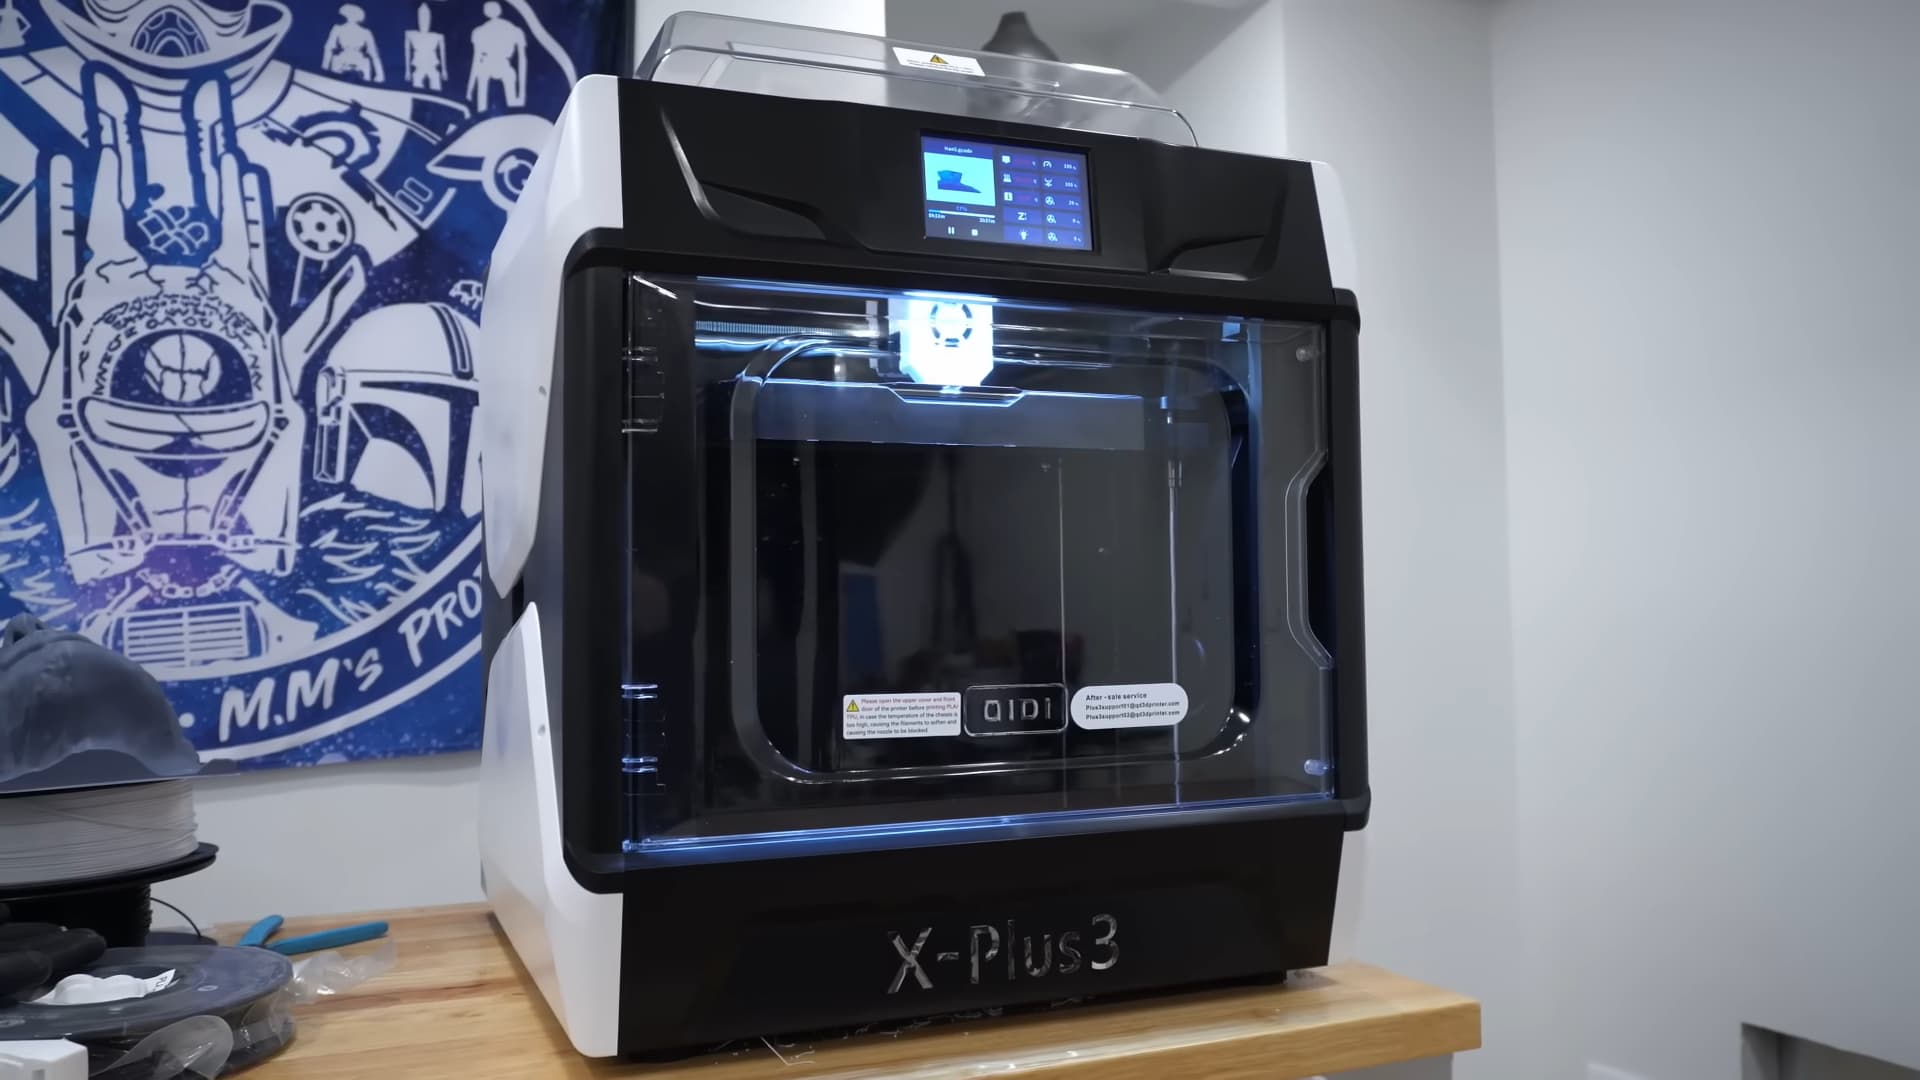 Ist es sicher, einen 3D-Drucker laufen zu lassen?